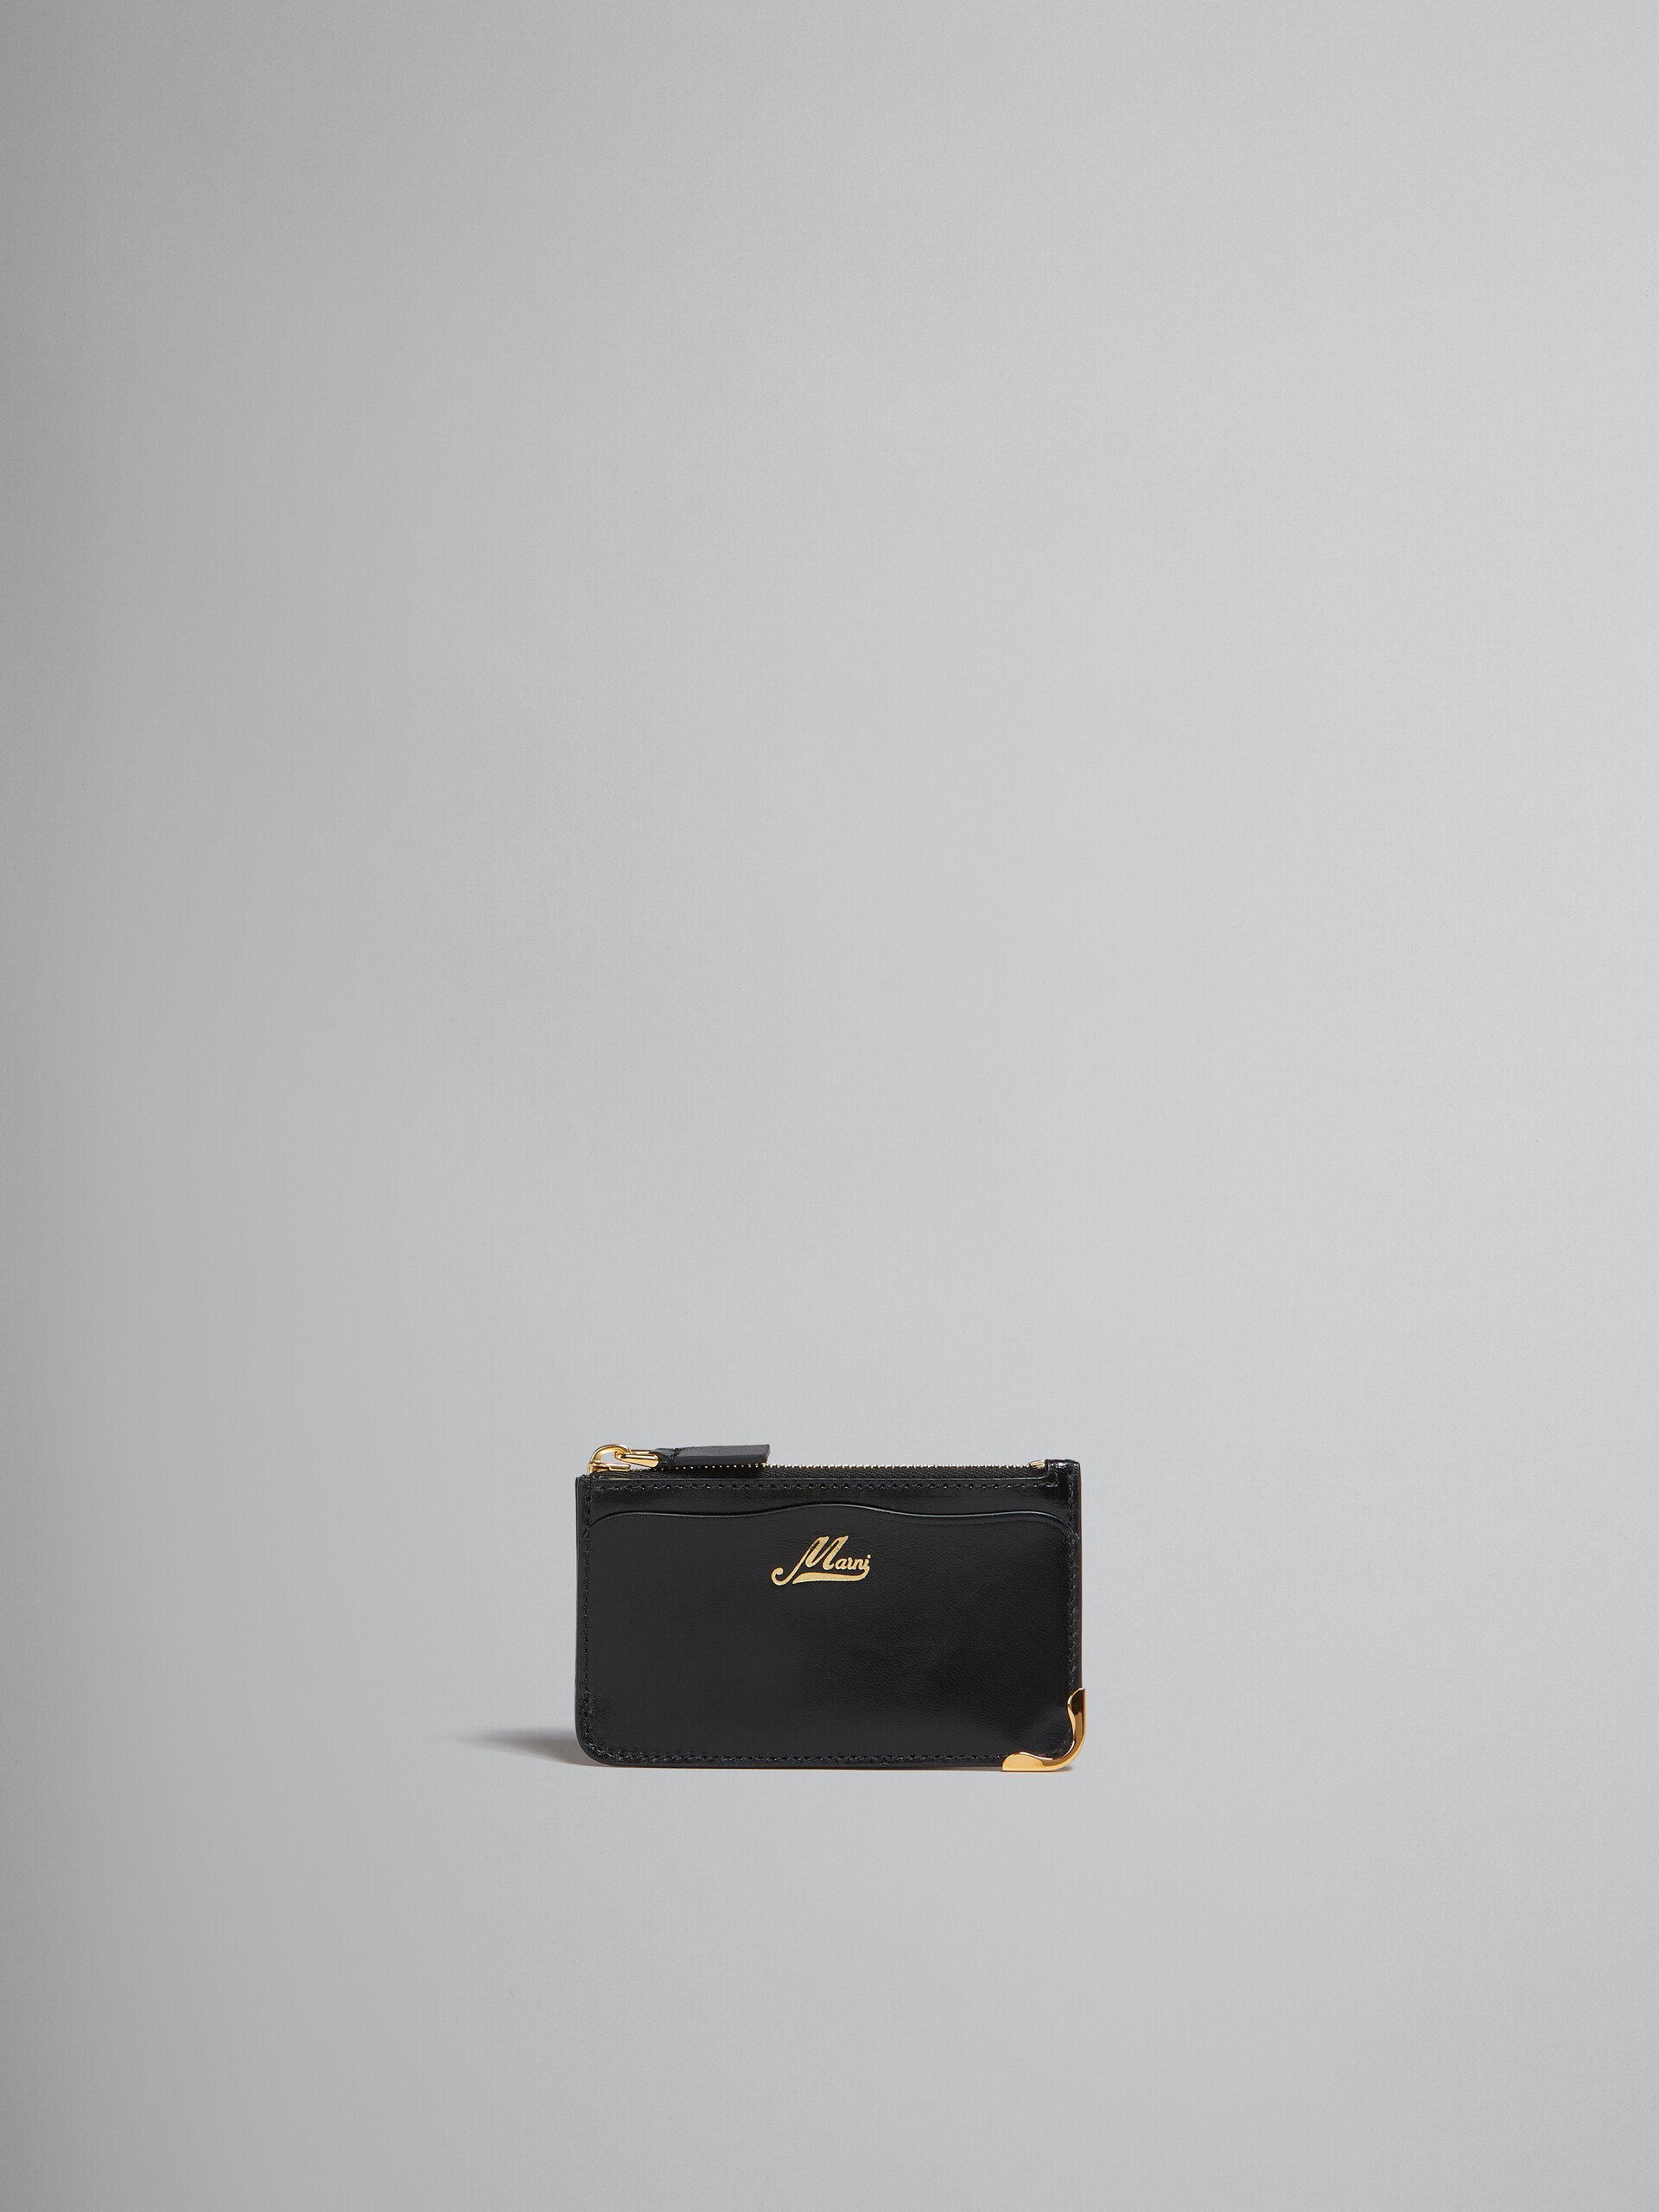 Schwarzes Lederportemonnaie mit wellenförmigen Fächern - Brieftaschen - Image 1